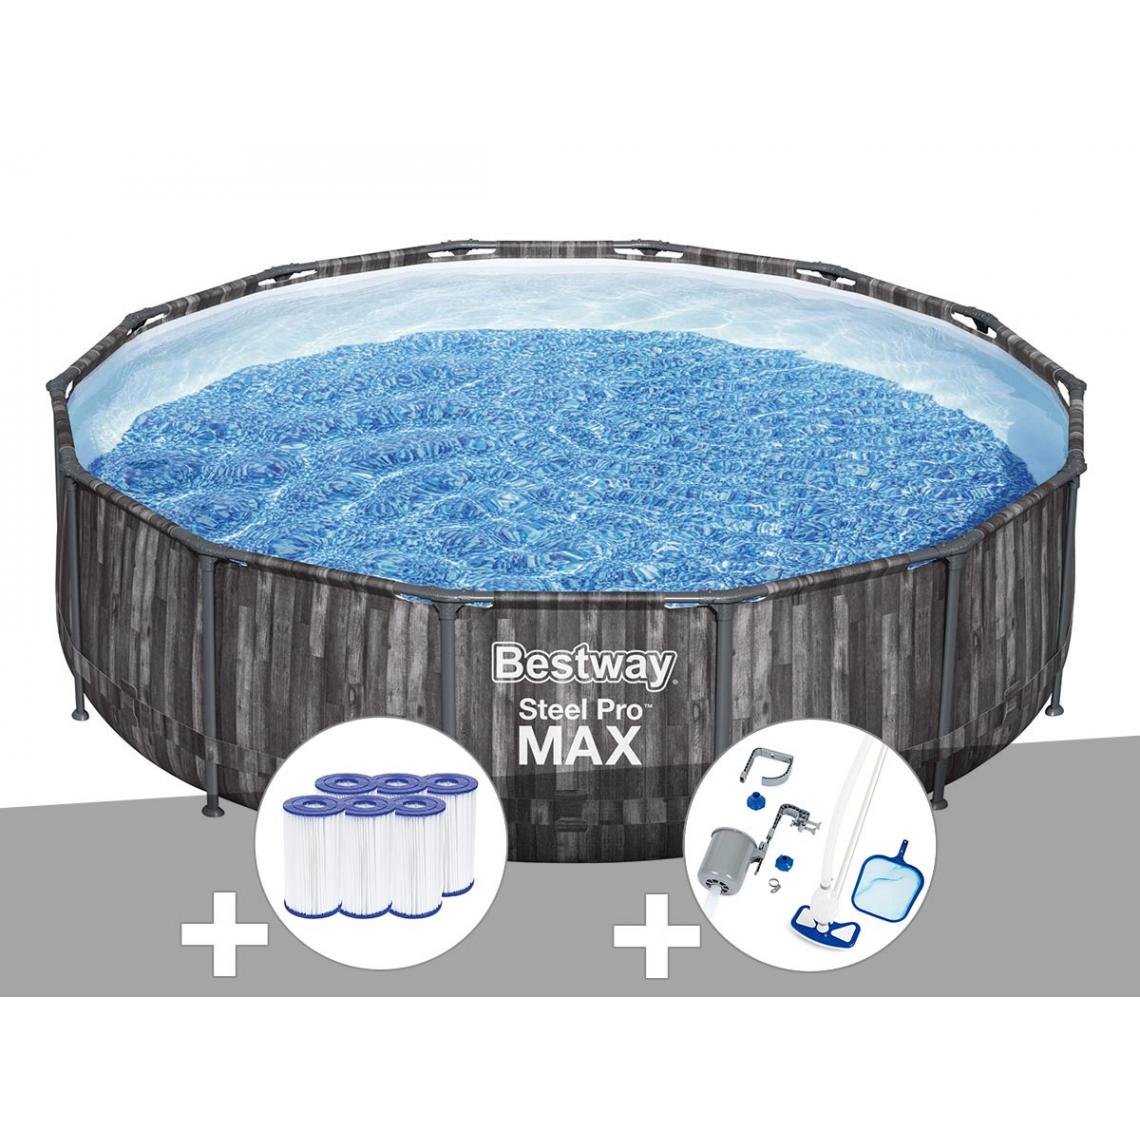 Bestway - Kit piscine tubulaire ronde Bestway Steel Pro Max décor bois, 4,27 x 1,07 m + 6 cartouches de filtration + Kit d'entretien Deluxe - Piscine Tubulaire